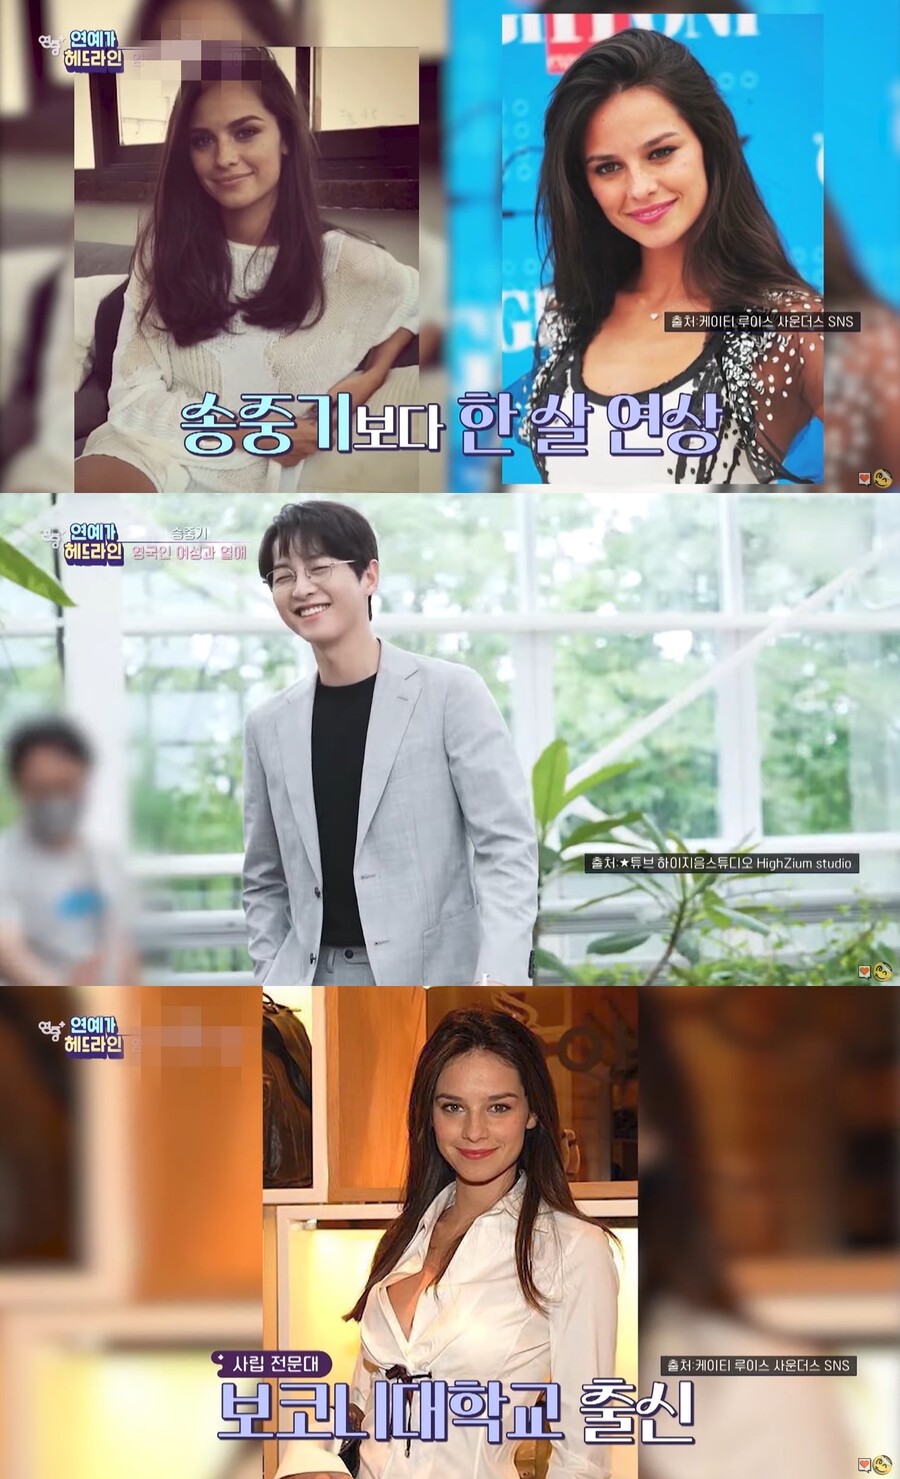 ▲ 배우 송중기, 아내 케이티 루이스 사운더스. 출처| KBS2 예능프로그램 '연중 플러스' 캡처